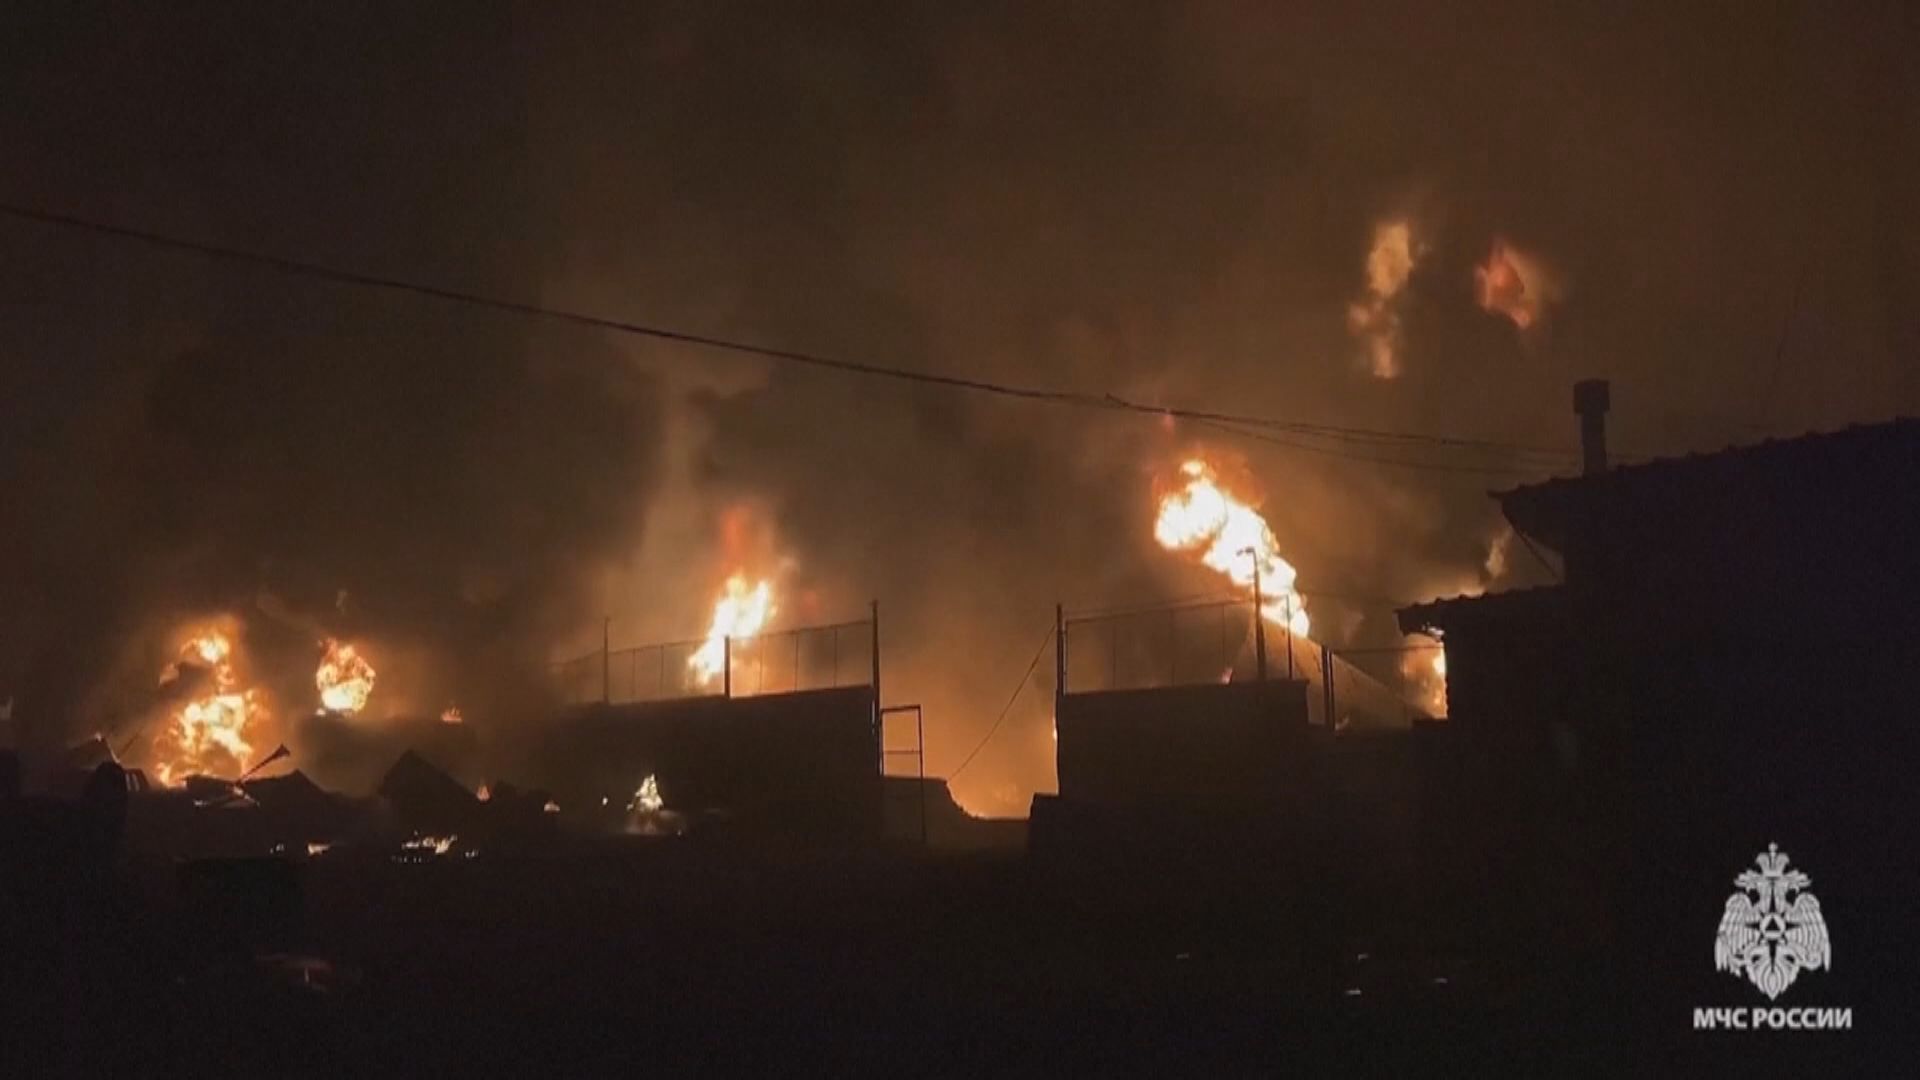 烏東頓巴斯地區遭烏軍空襲 俄軍攻擊烏境小鎮三千居民撤離